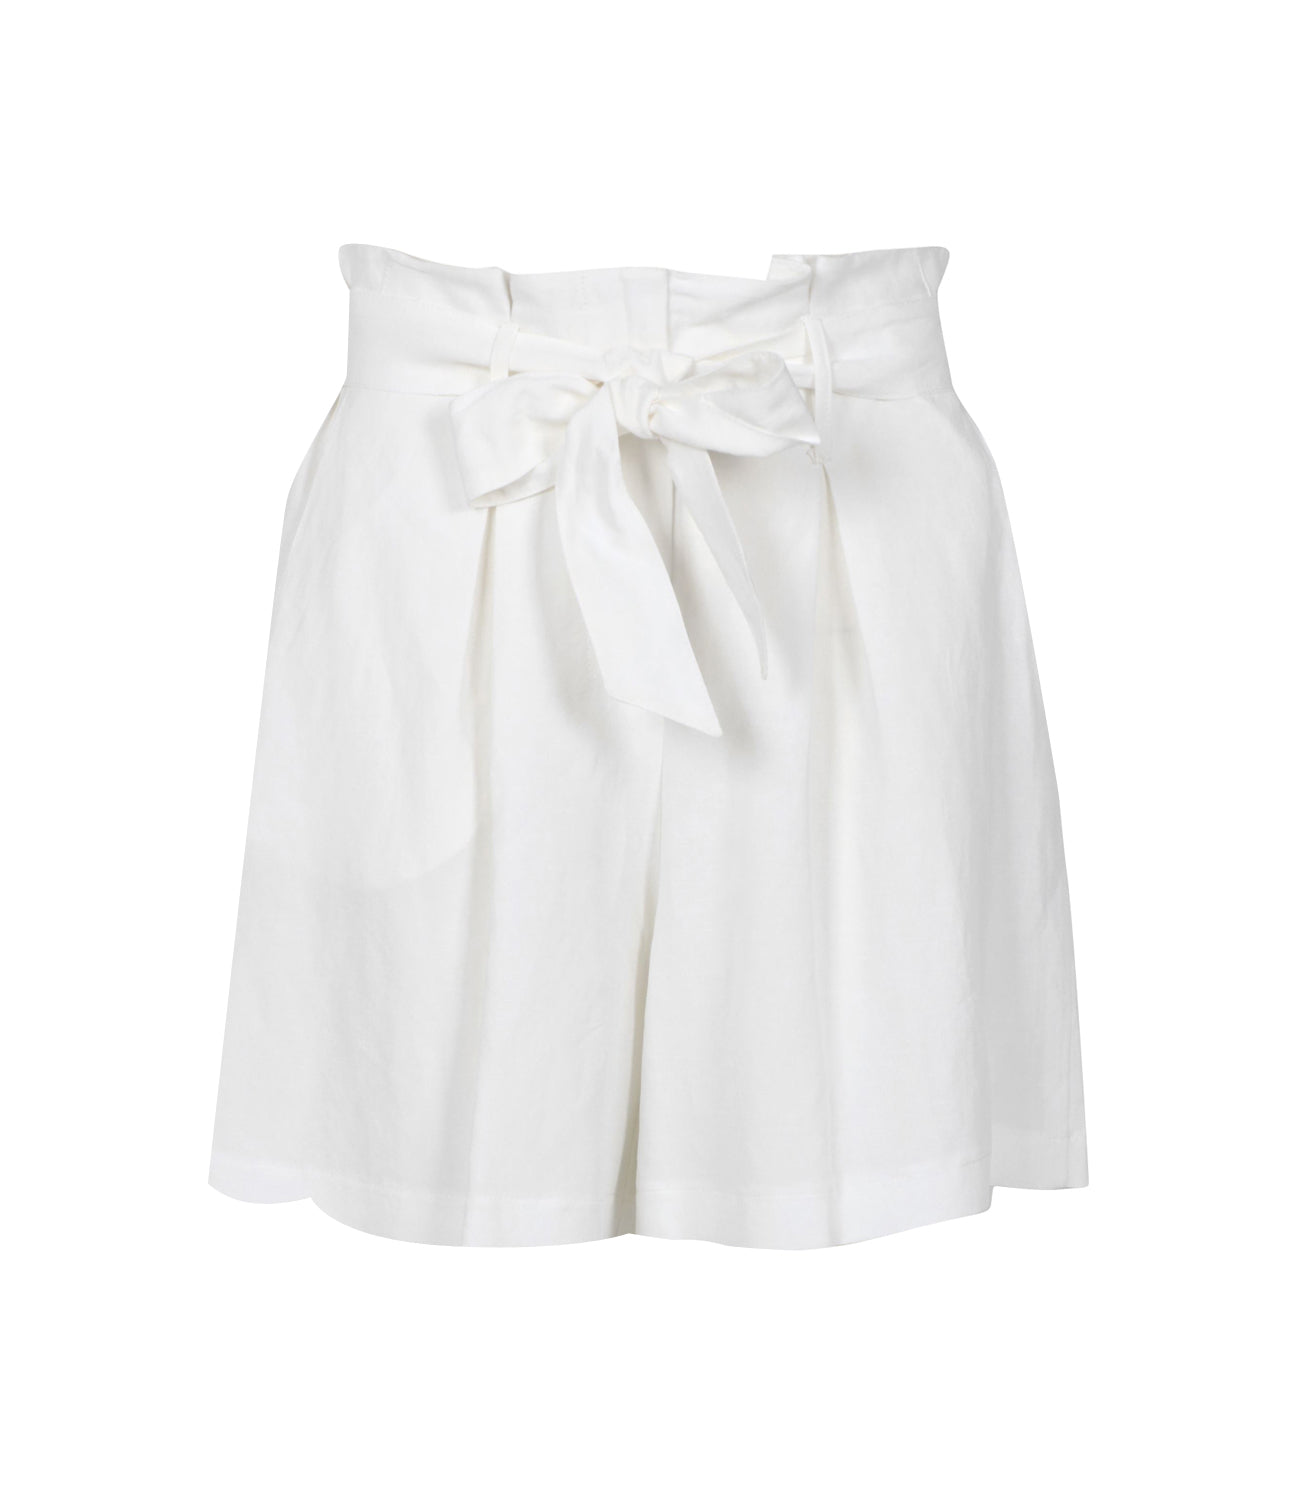 Kaos | Shorts Bianco